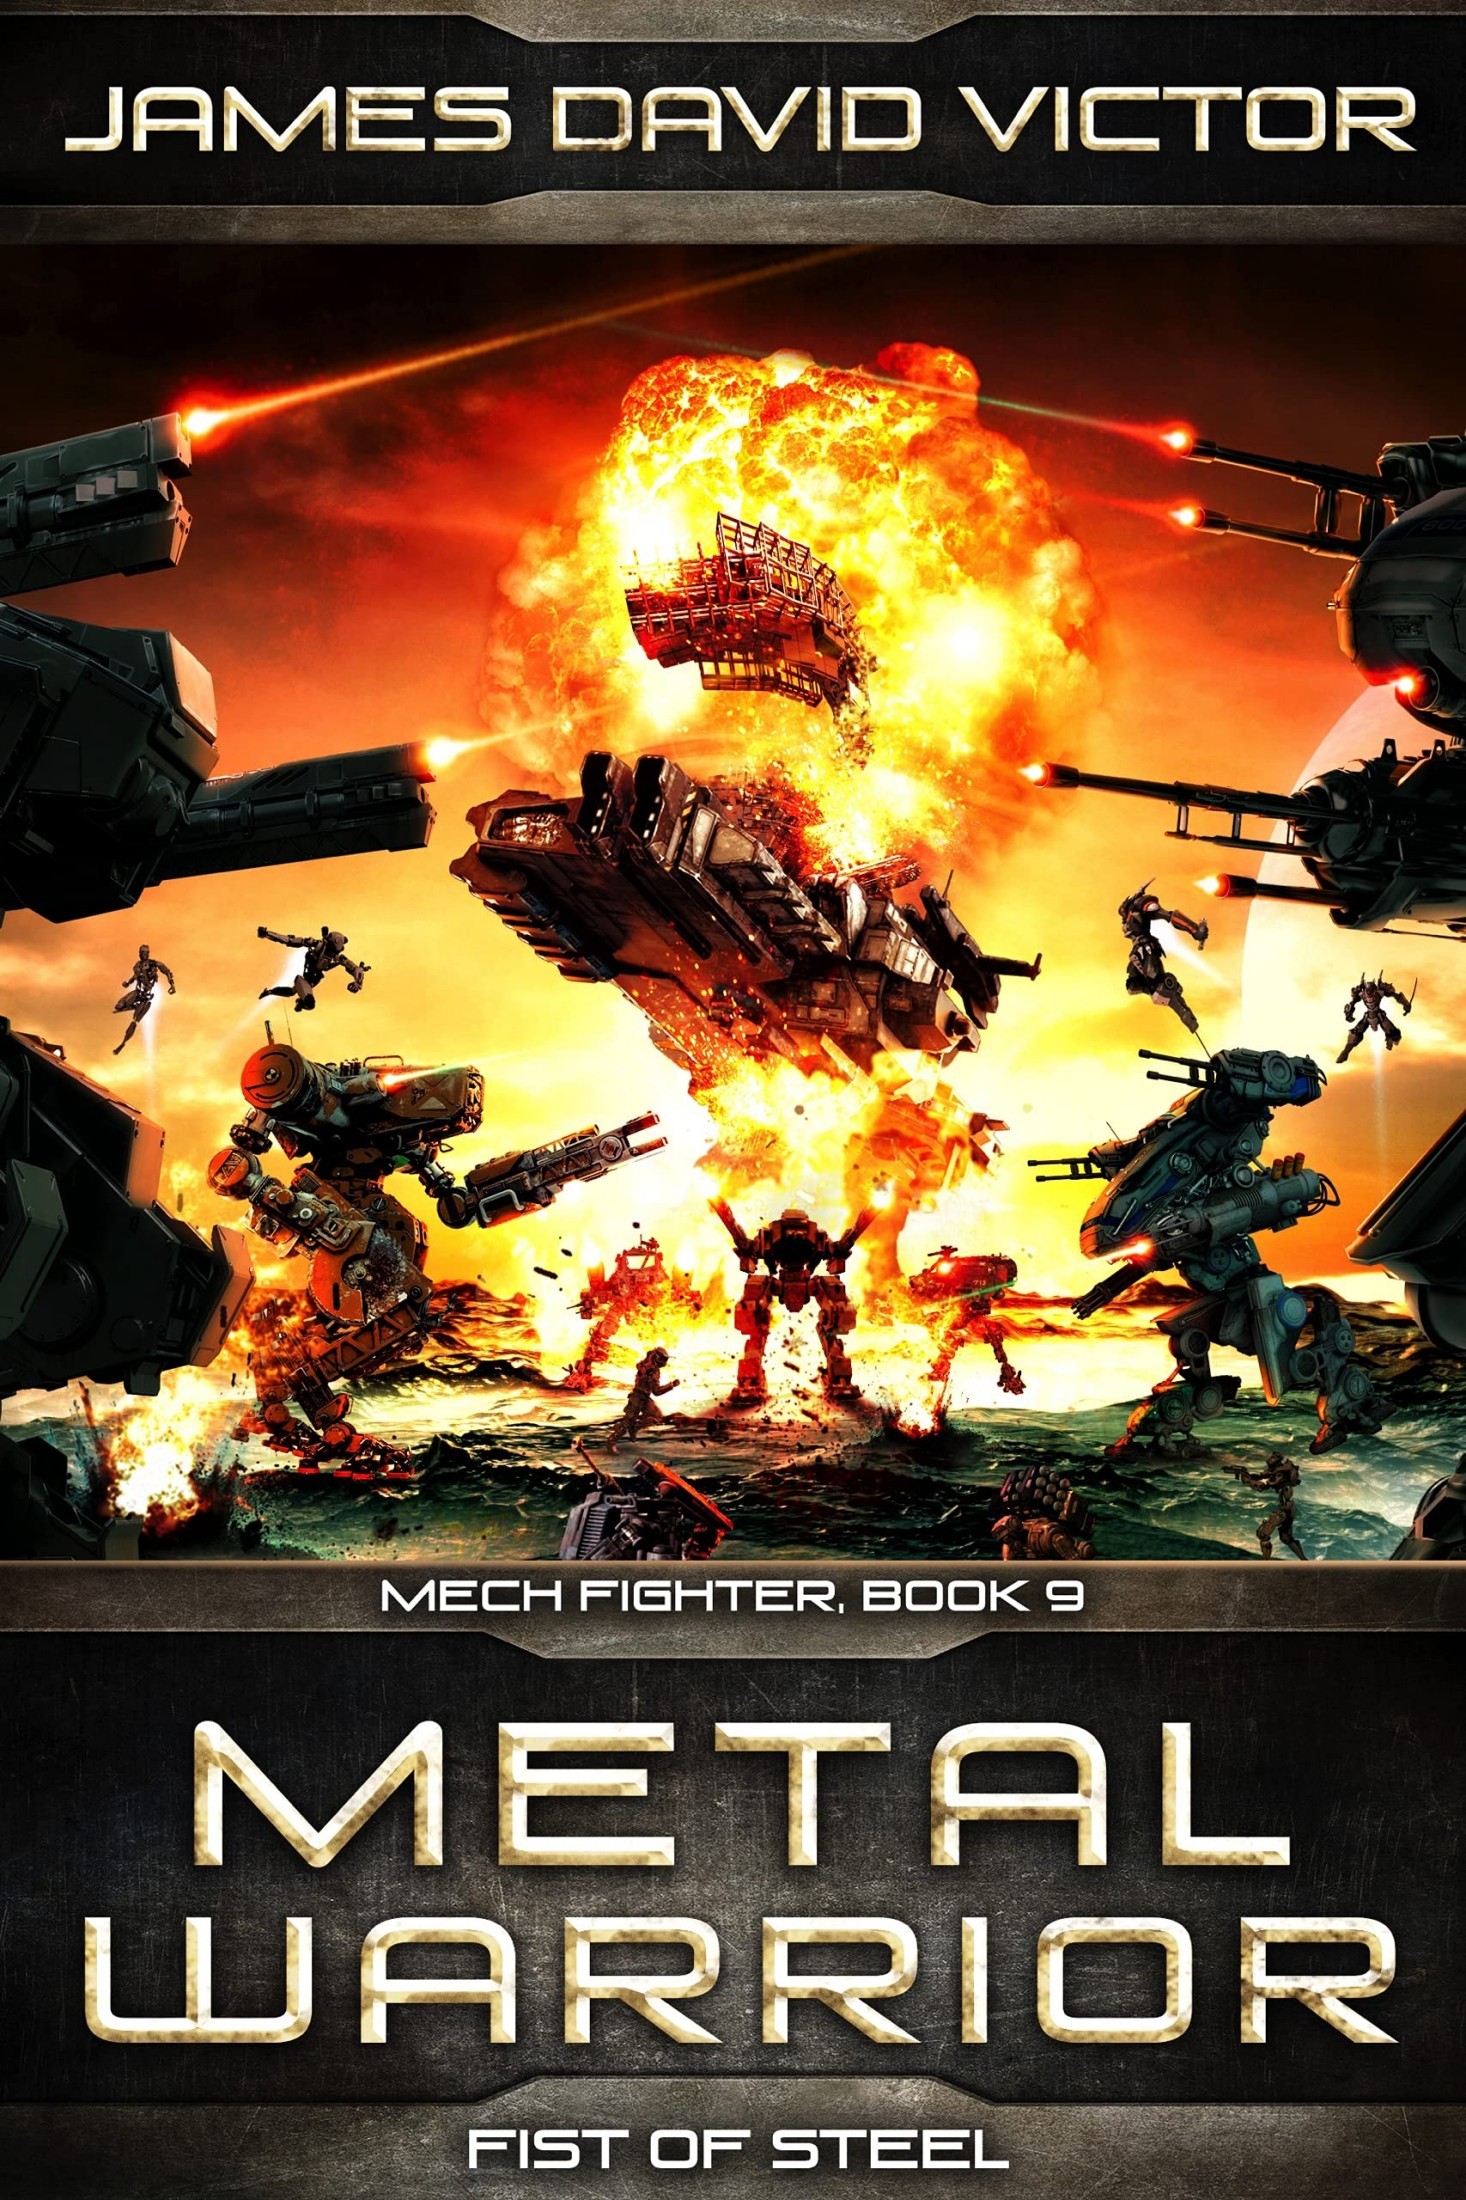 Metal Warrior [9]: Fist of Steel